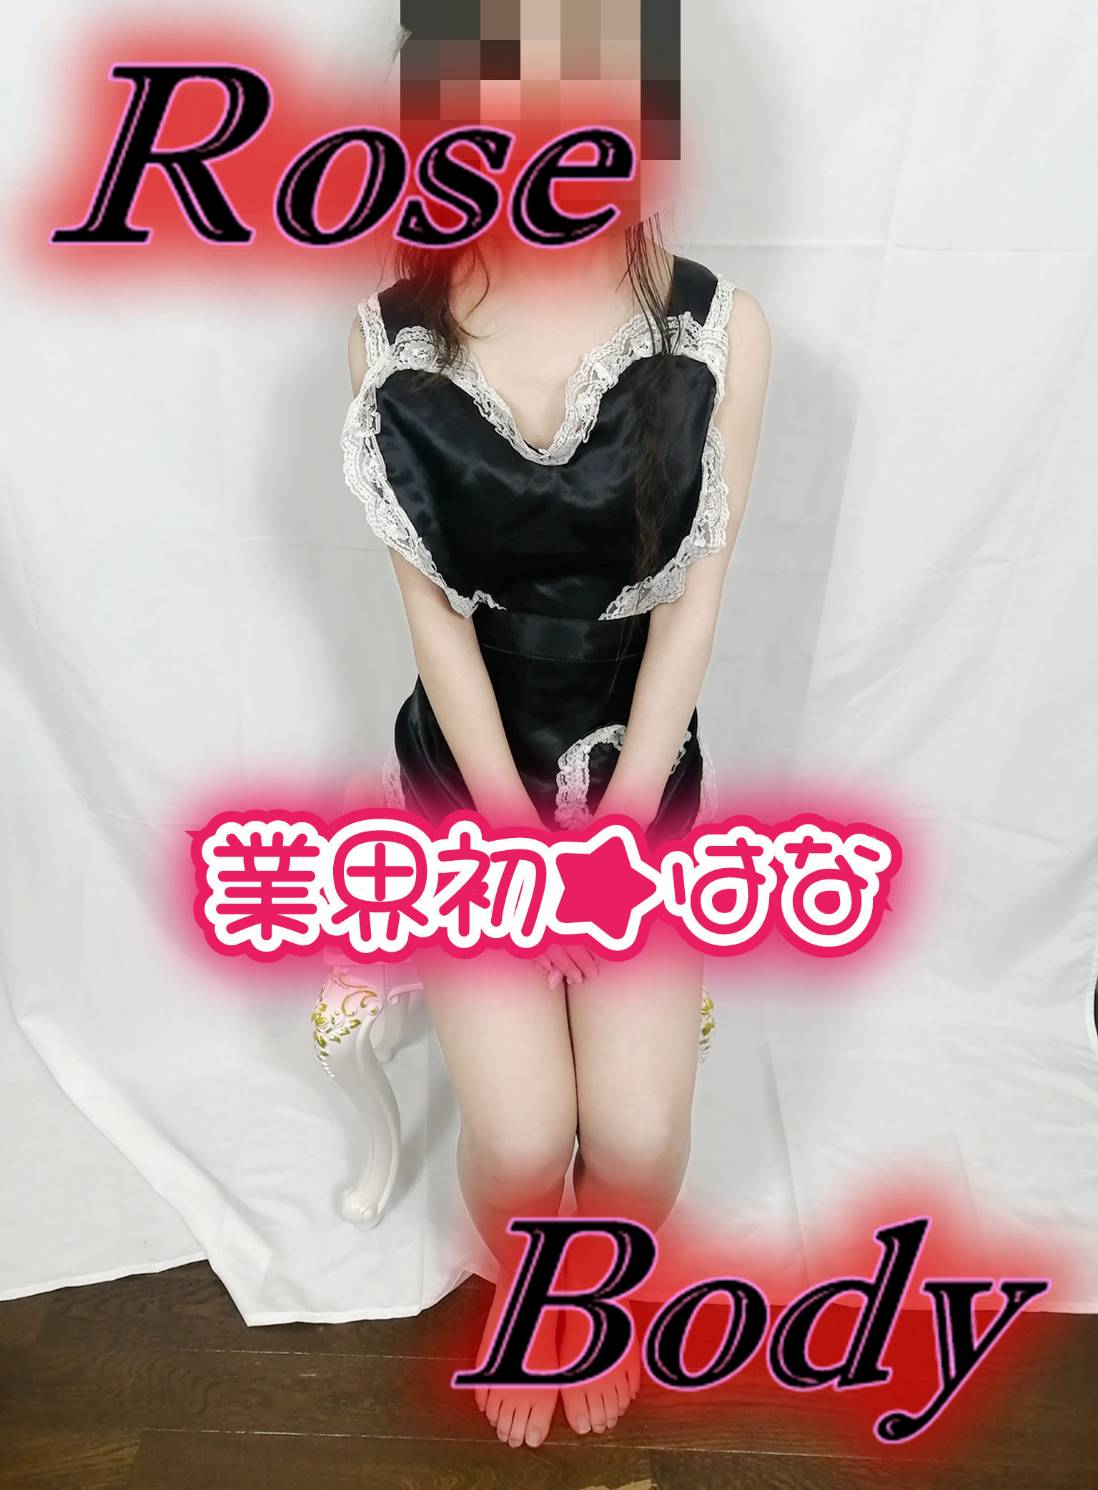 十和田rose bodyおすすめ女の子1